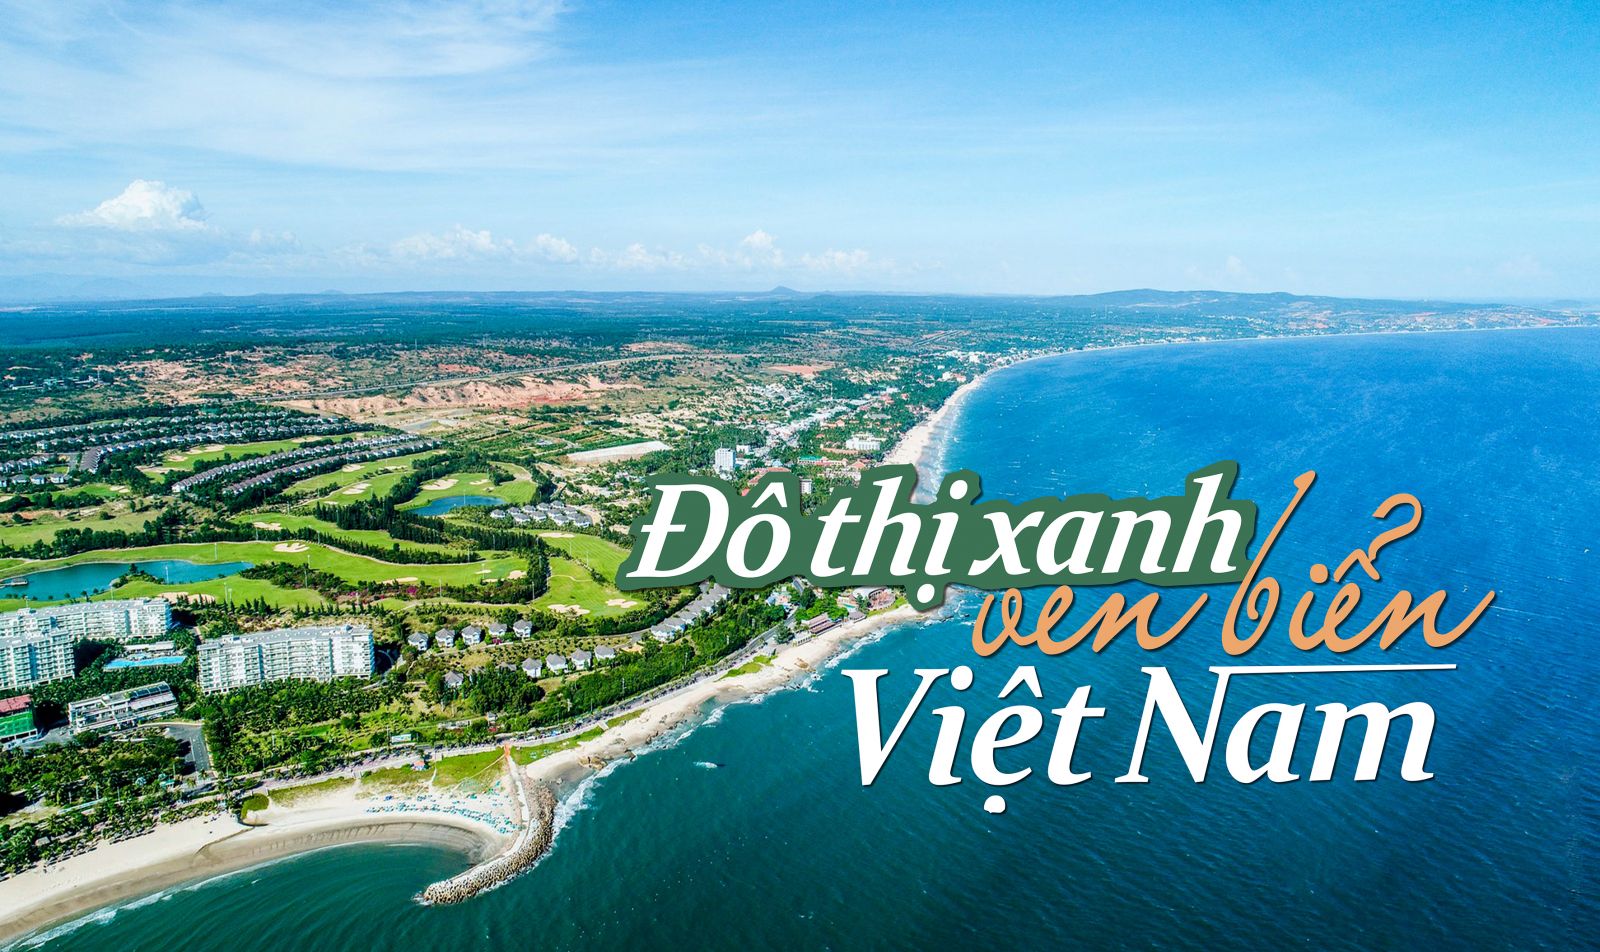 Đô thị xanh ven biển Việt Nam nhìn từ góc độ bền vững văn hóa